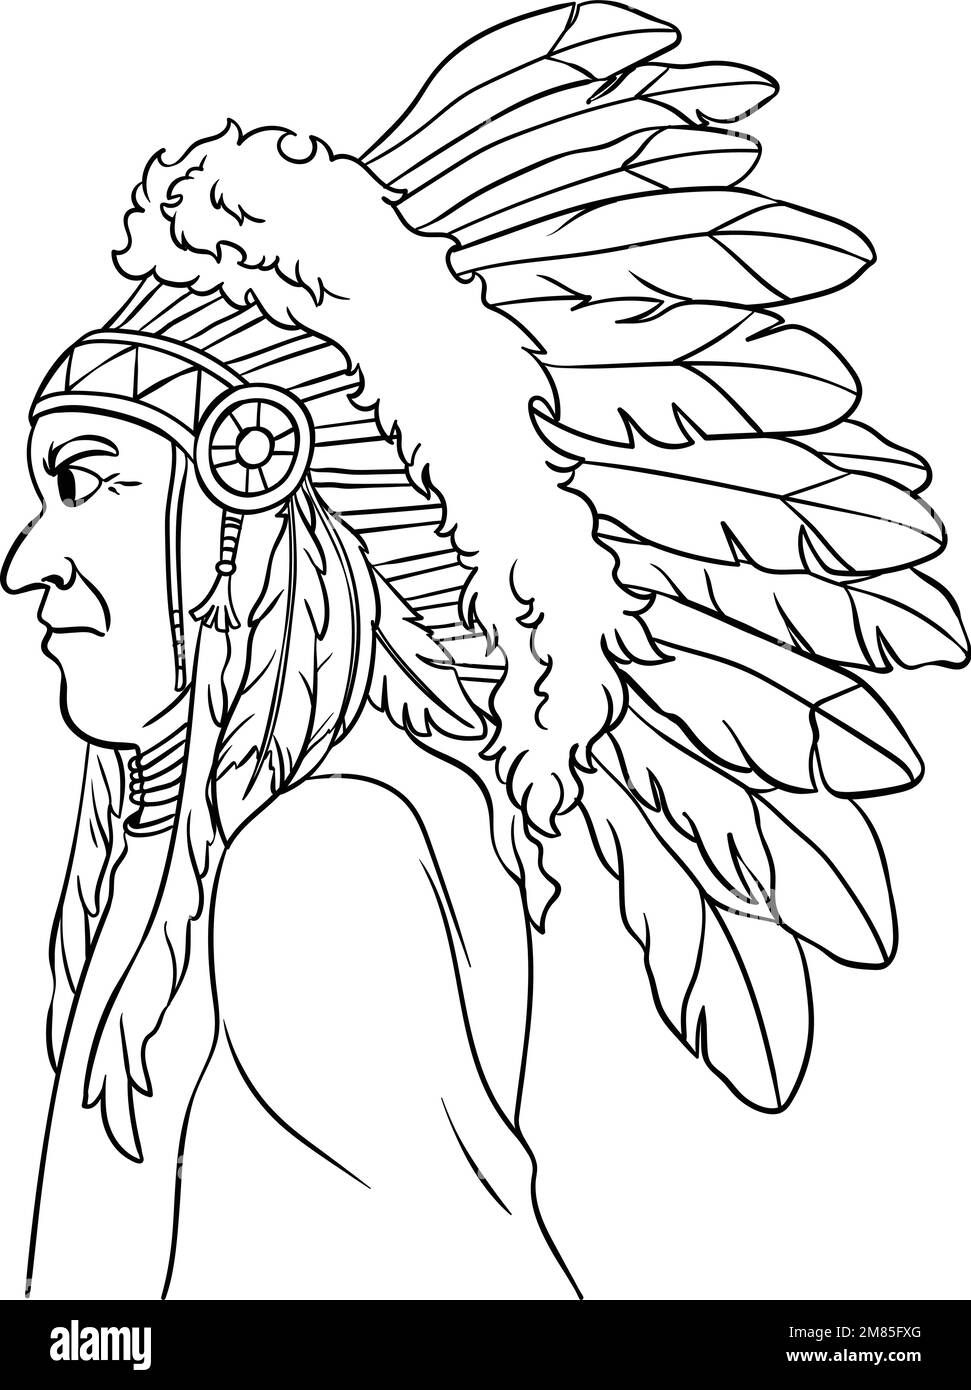 Chieftain indien natif coloration isolée Illustration de Vecteur